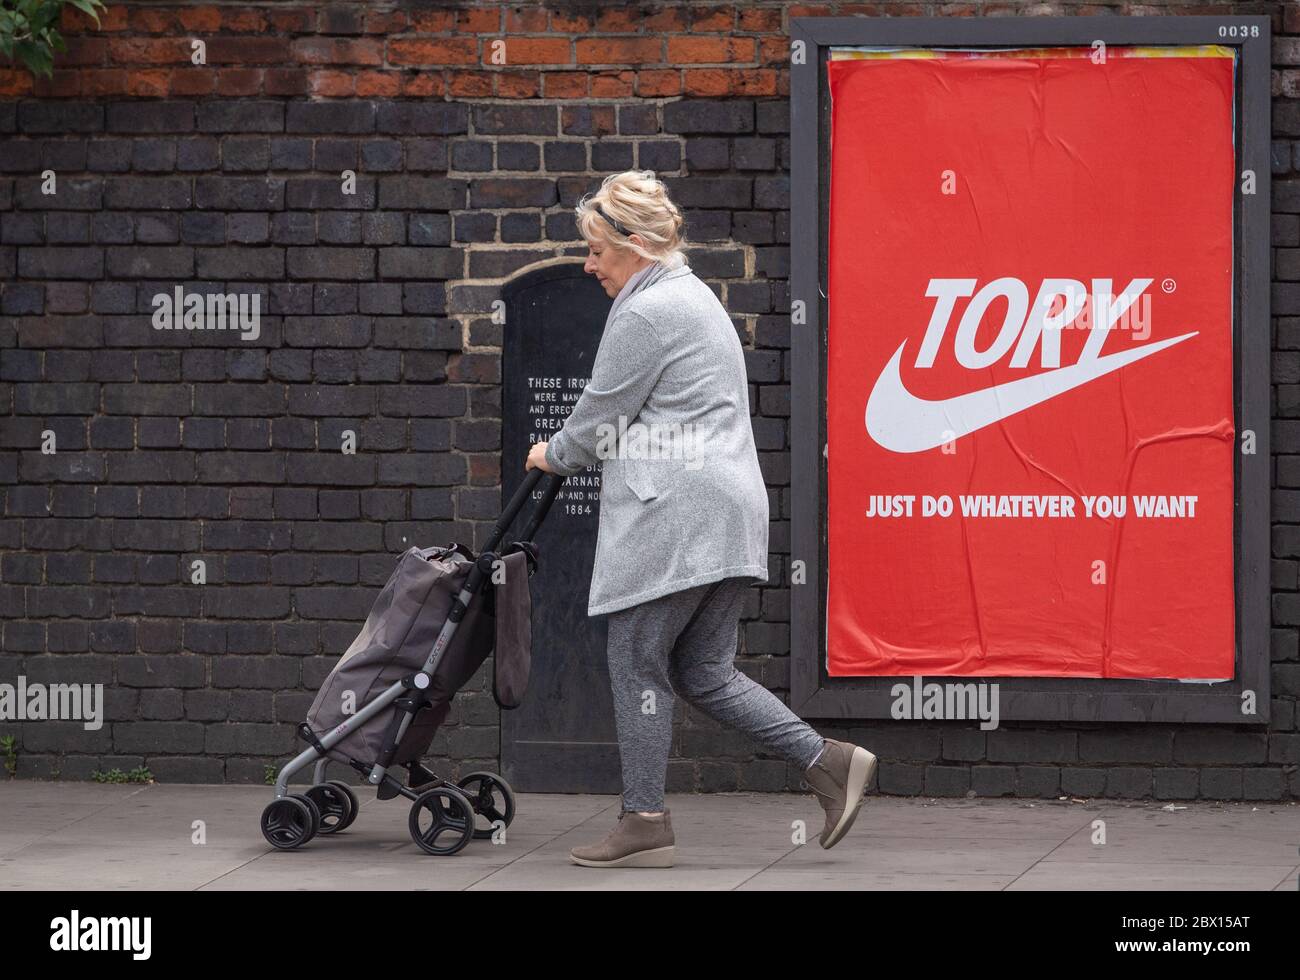 Una donna passa un poster che legge 'Tory - Just Do Anywhat you want', a Shoreditch, a est di Londra, dopo l'introduzione di misure per portare l'Inghilterra fuori dal blocco. Foto Stock